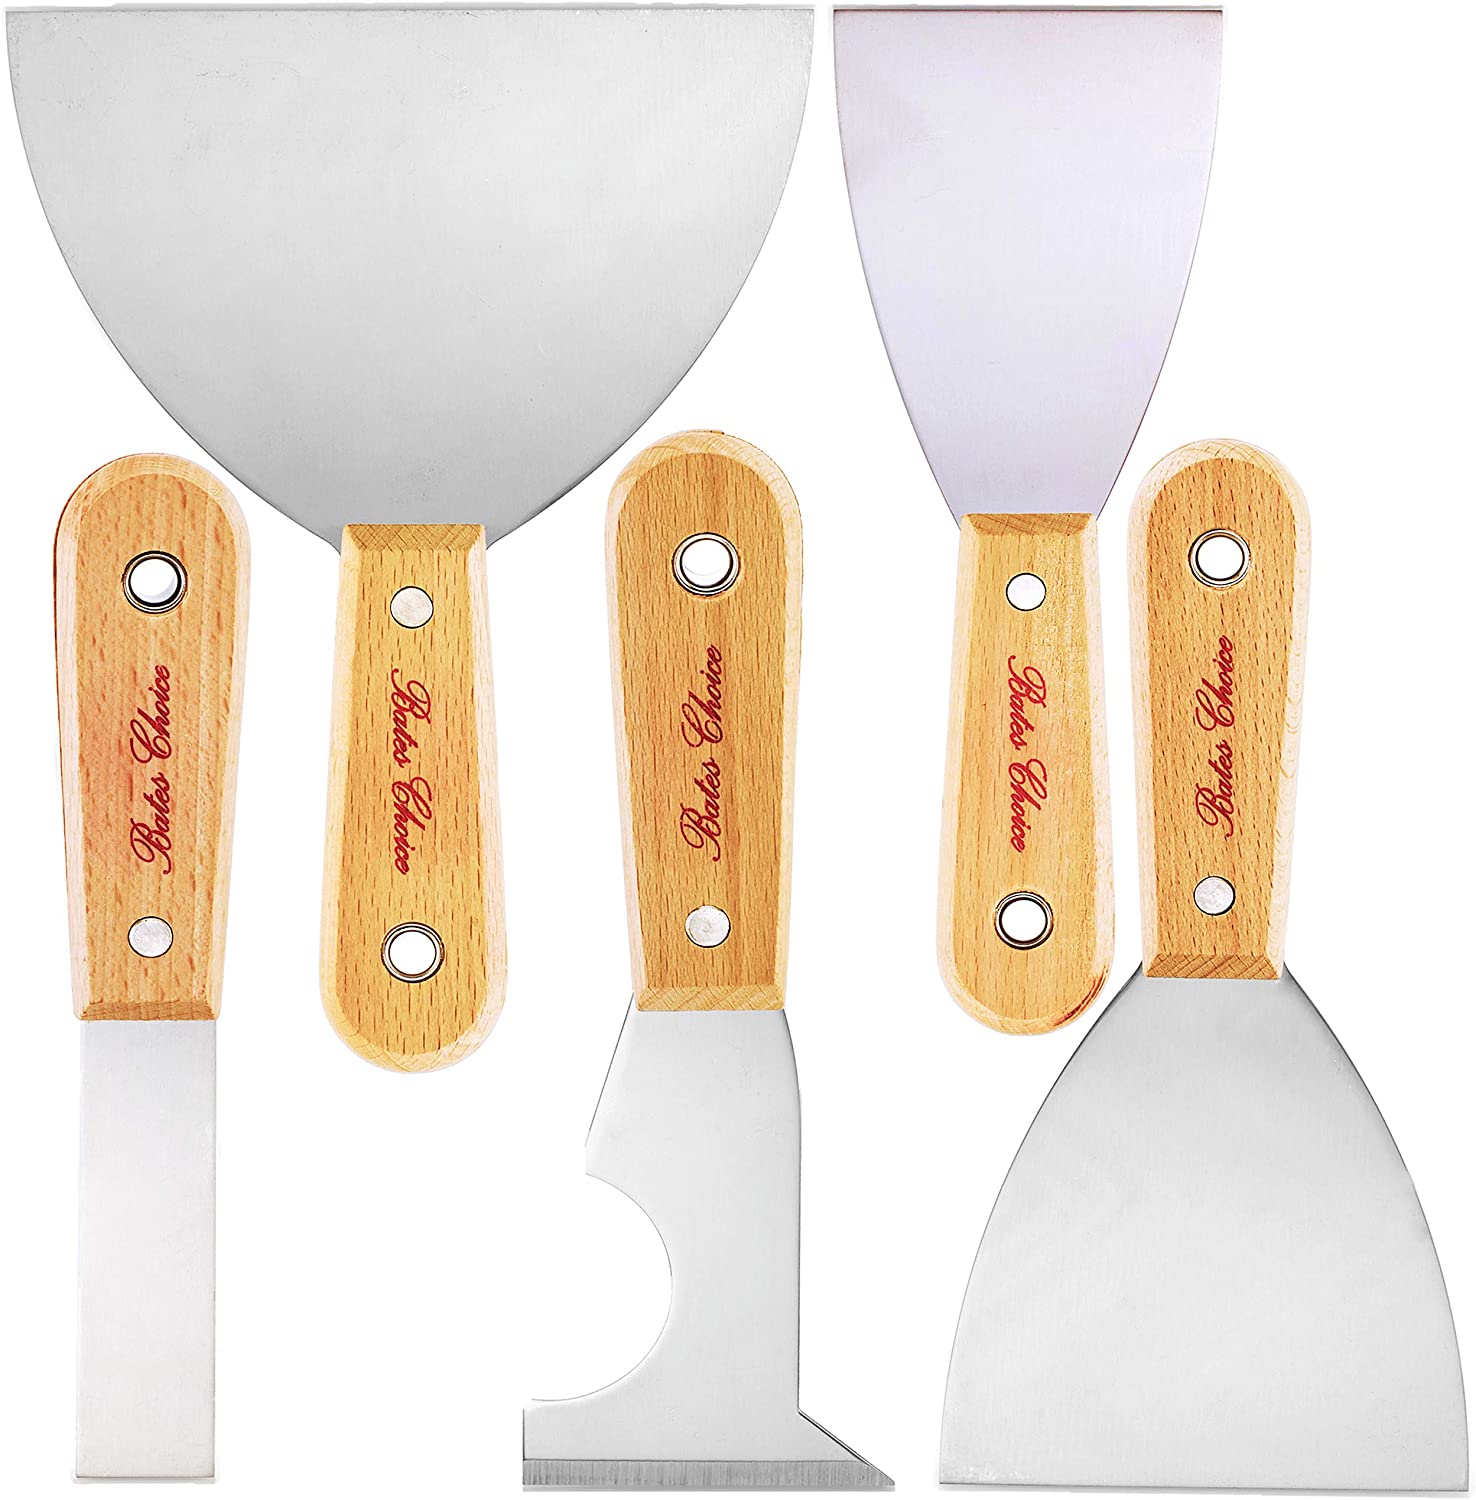 Bates- Paint Scraper, 5 Pc Scraper Tool, Putty Knife Set, Putty Knife,  Painting Tools, 5 in 1 Tool - Bates Choice